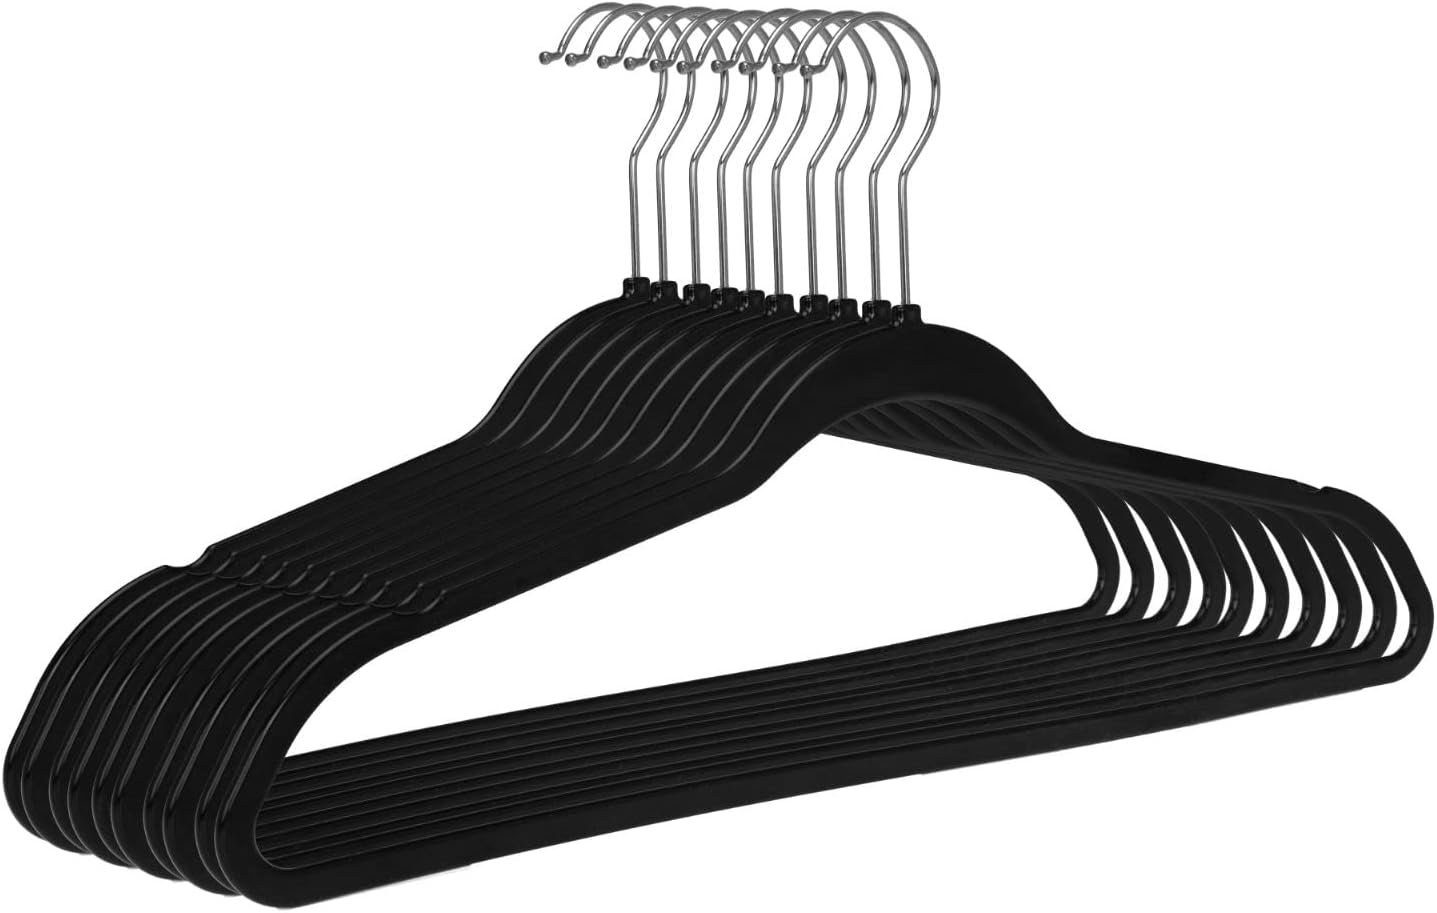 Black Velvet Hangers 17.5. Pack of 25 Thin Hangers Non Slip Velvet